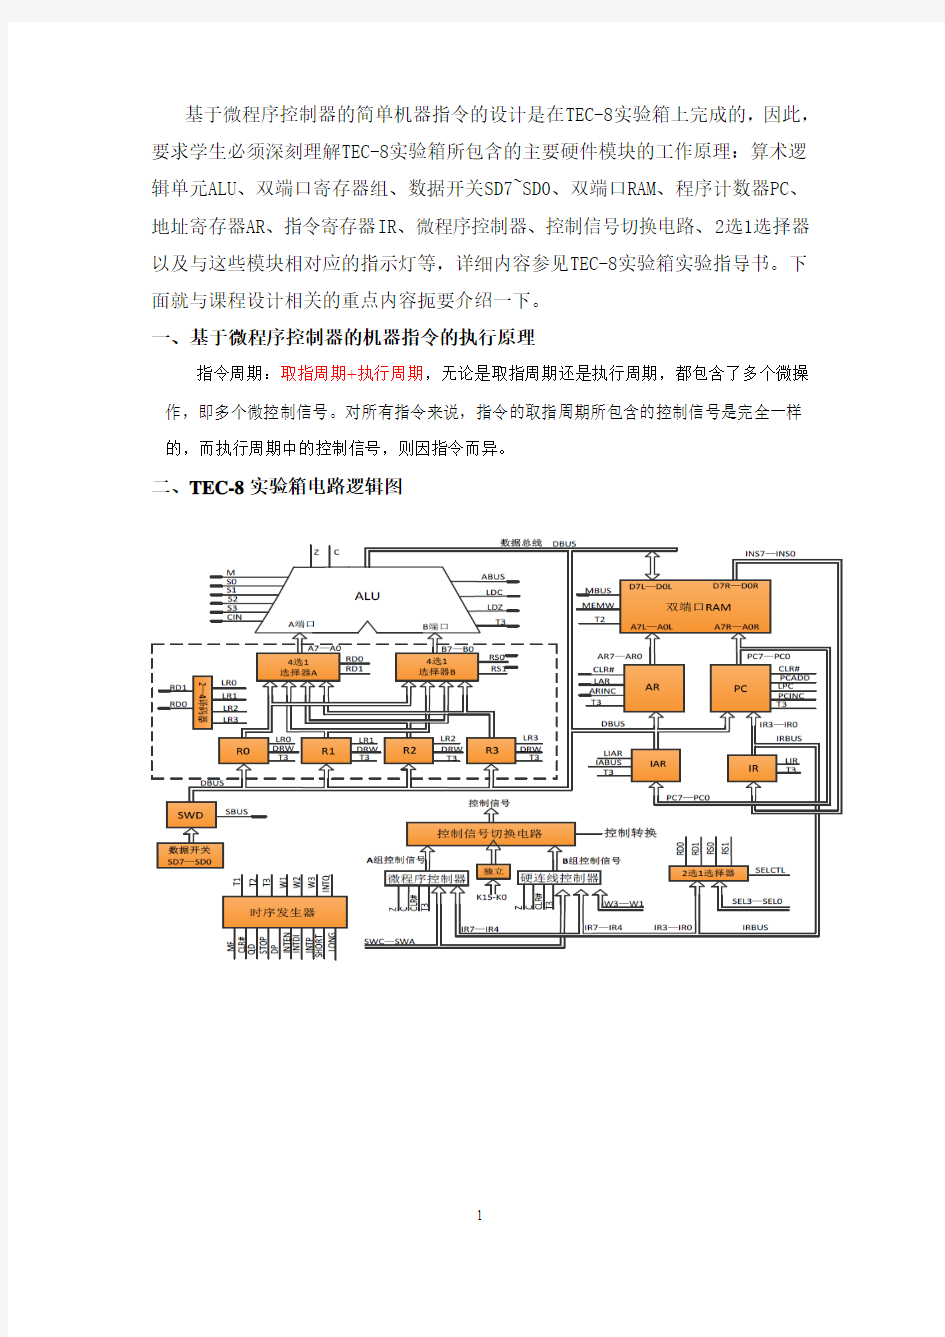 基于微程序控制器的《计算机系统综合设计》课程设计指导书